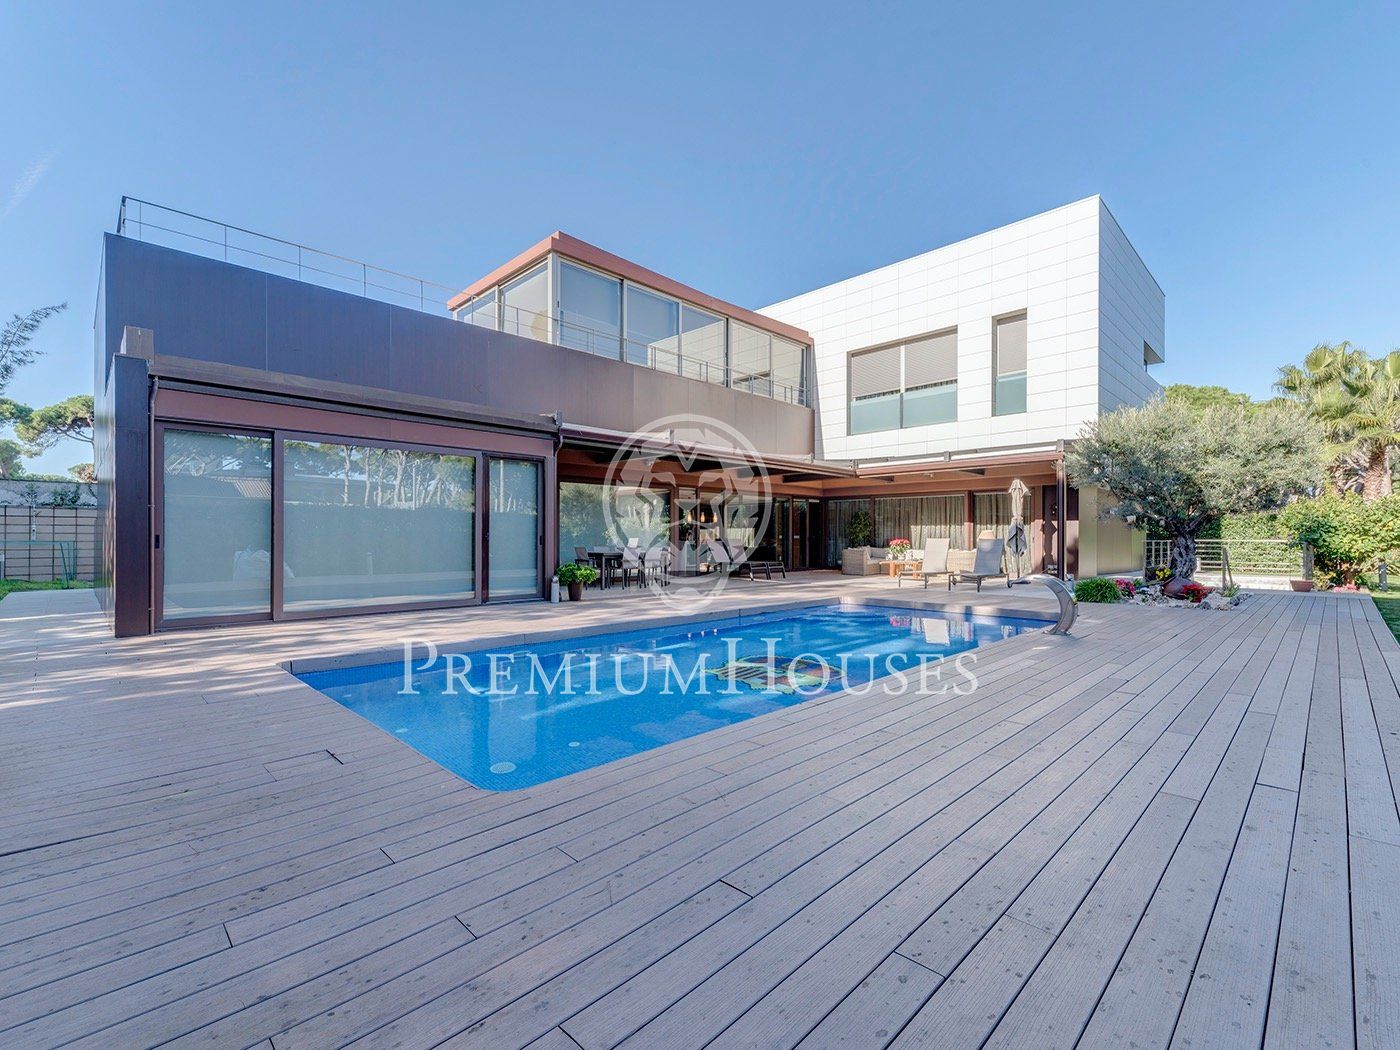 Casa De 500 M Con Piscina Y Vistas En Venta En Castelldefels Premium Houses